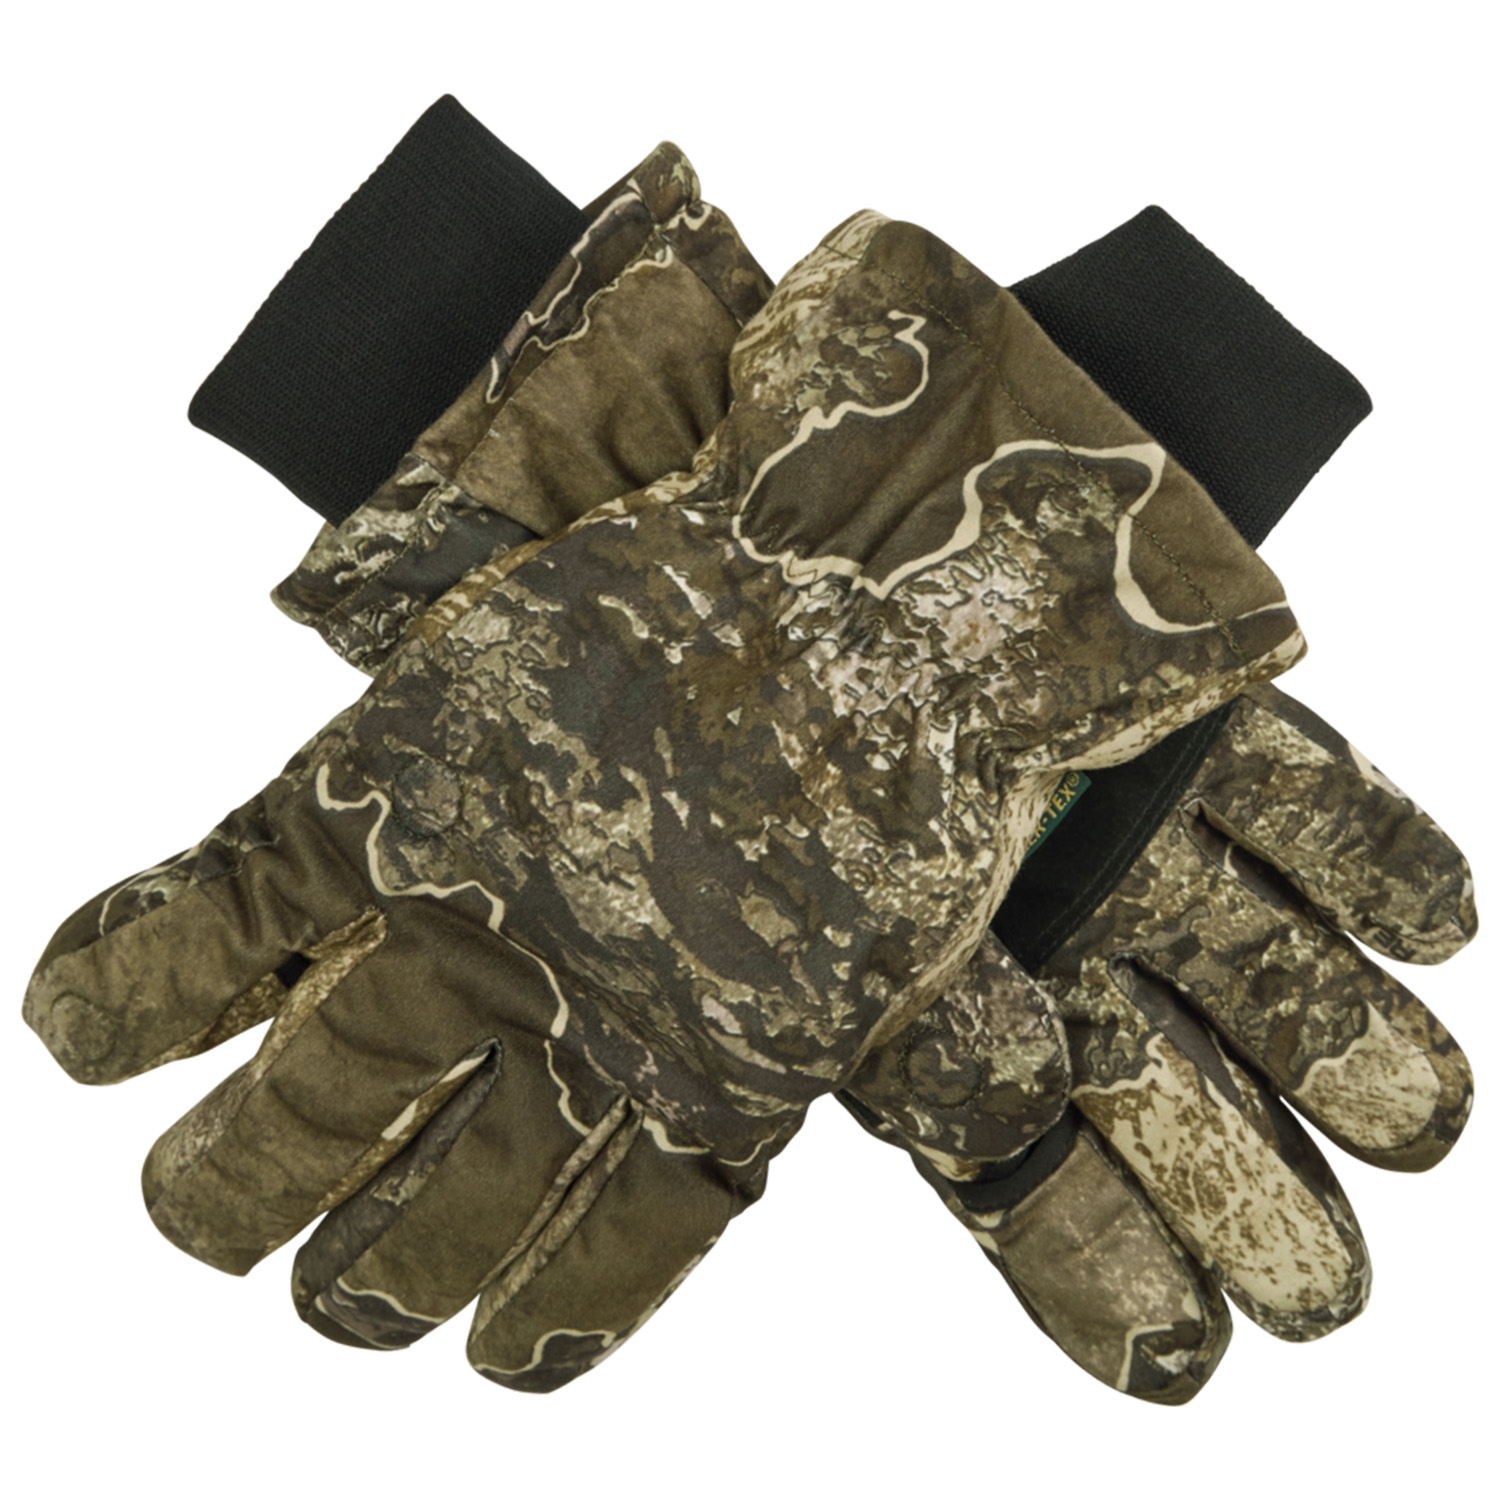  Deerhunter Winterhandschoenen Excape (Realtree) - Camouflage handschoenen